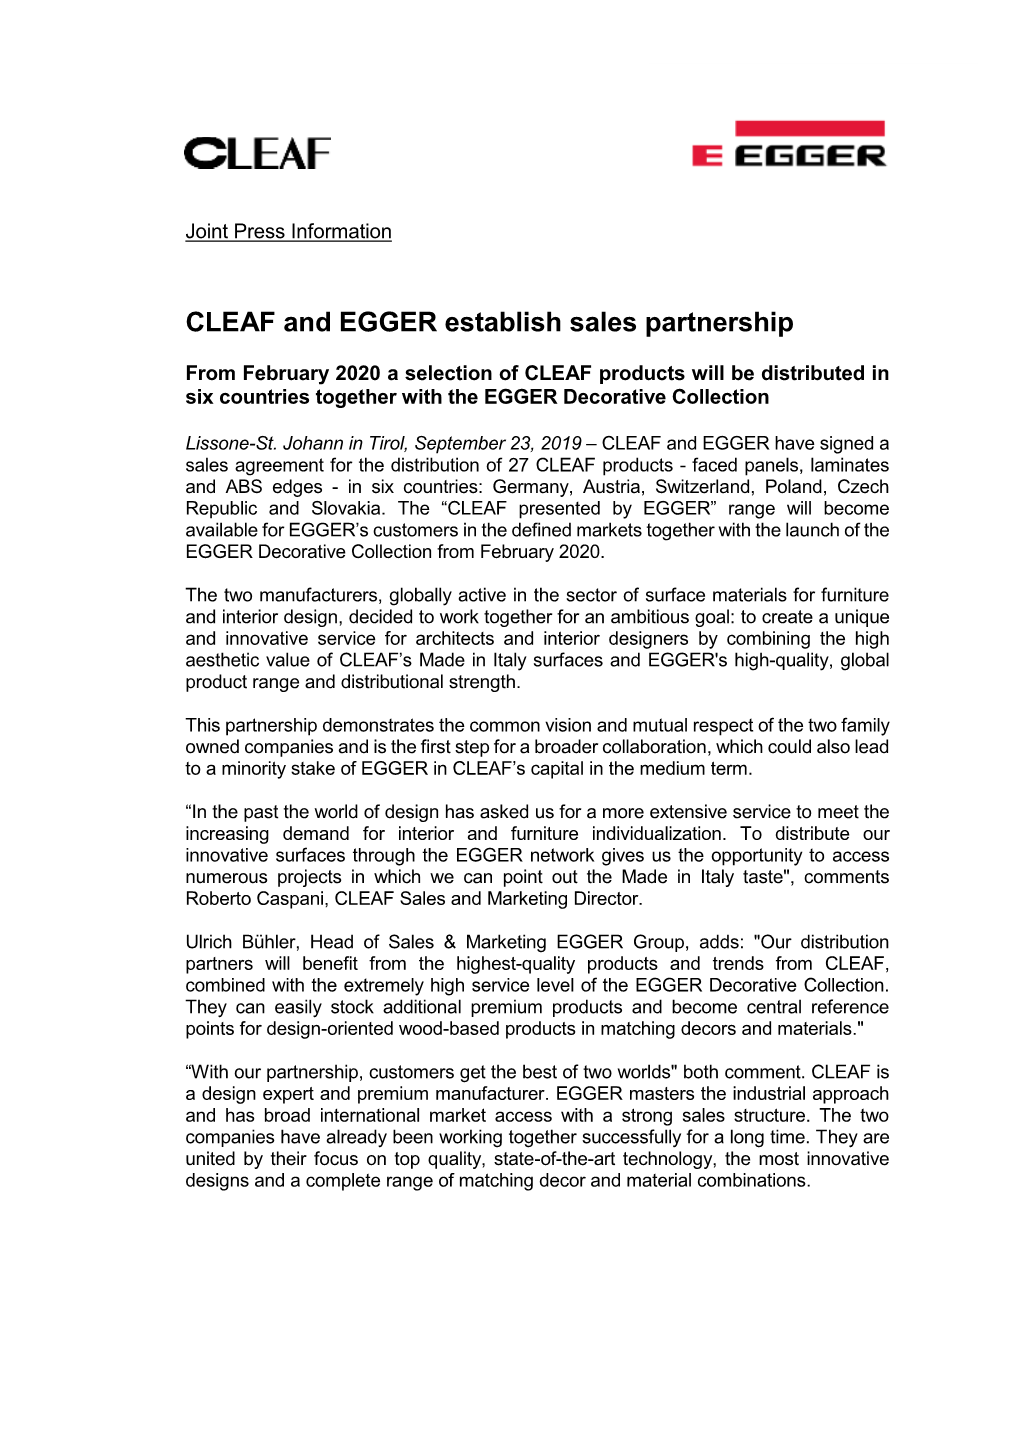 CLEAF and EGGER Establish Sales Partnership